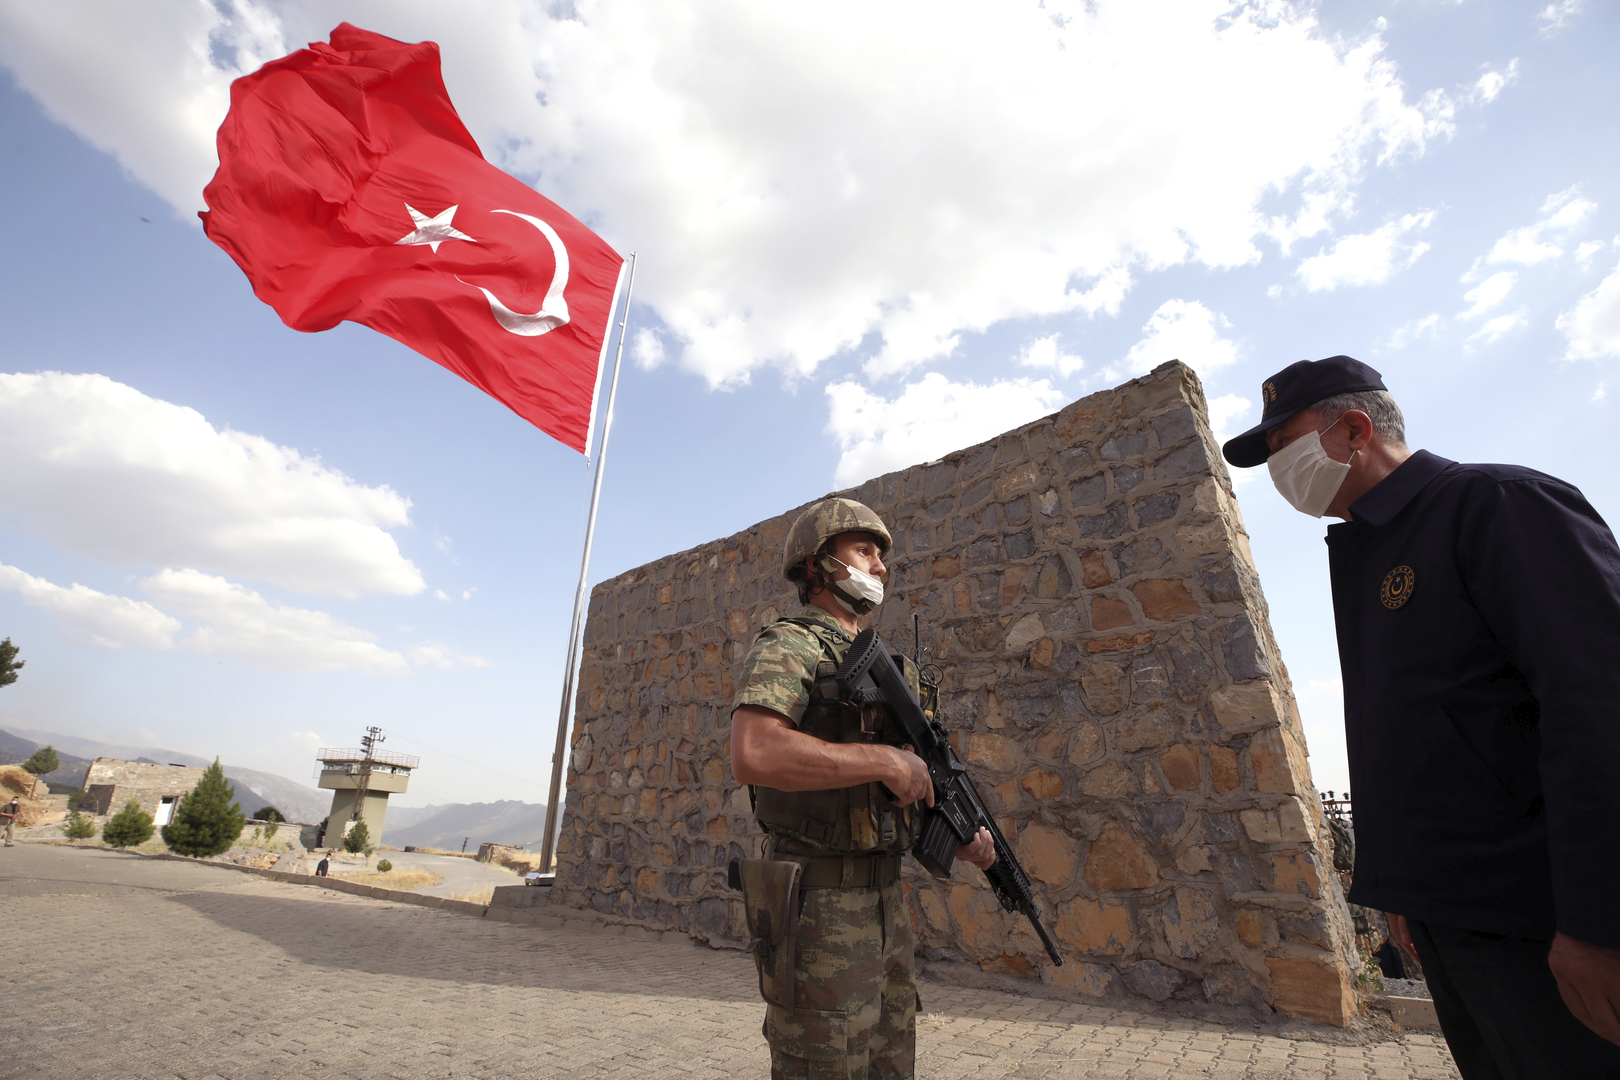 مراسلنا: مقتل 3 جنود أتراك في هجوم نفذه حزب العمال الكردستاني على قوة للجيش التركي شمالي العراق